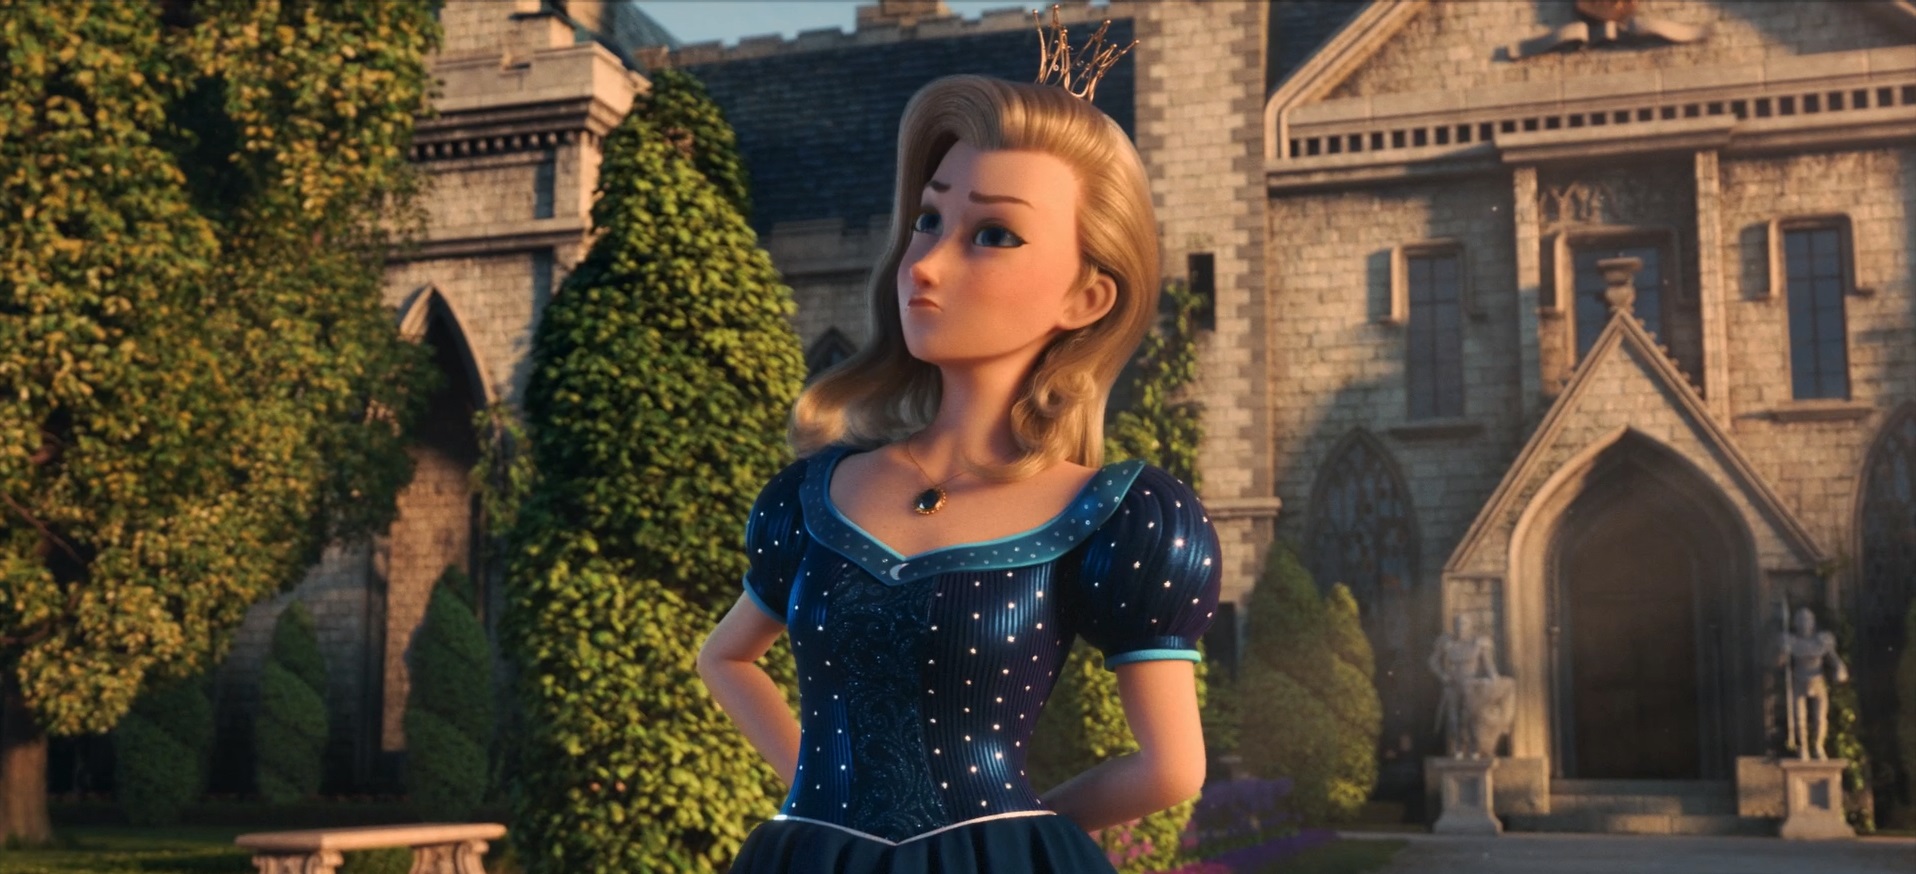 Klasická hra Proud Princess byla přepracována ve 3D animaci